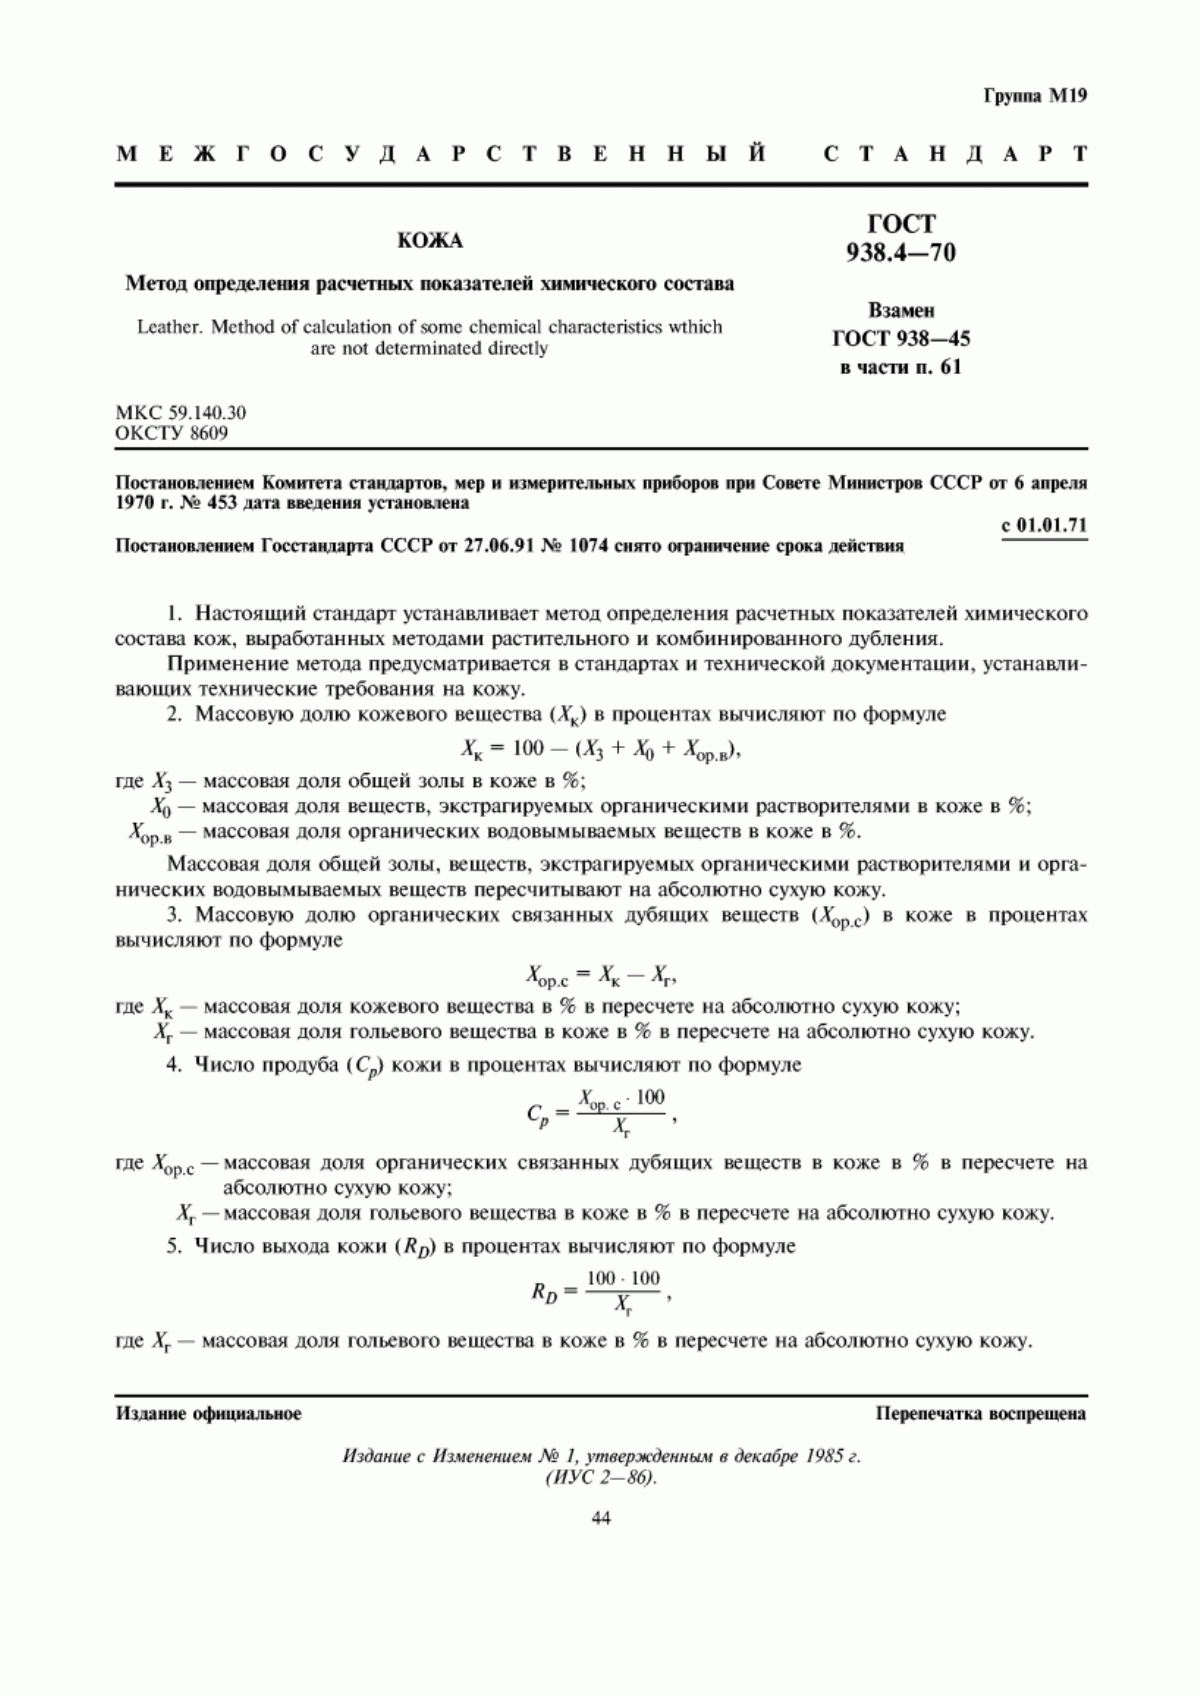 ГОСТ 938.4-70 Кожа. Метод определения расчетных показателей химического состава